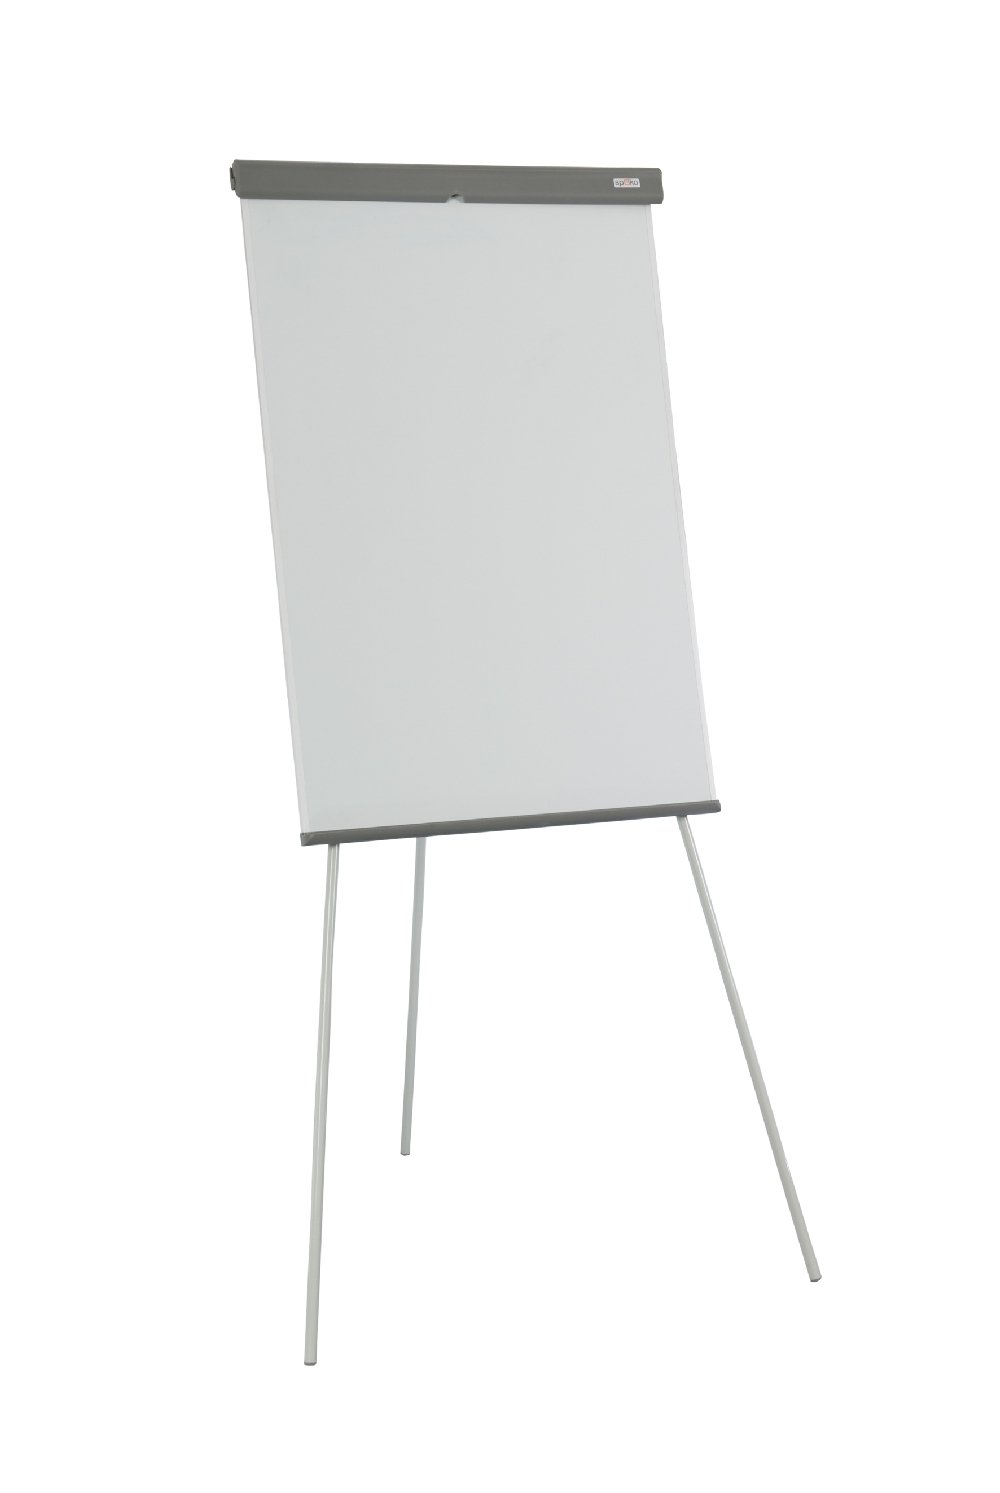 Levně Spoko S0712 flipchart, 105 x 68 cm, výška až 180 cm, bílý